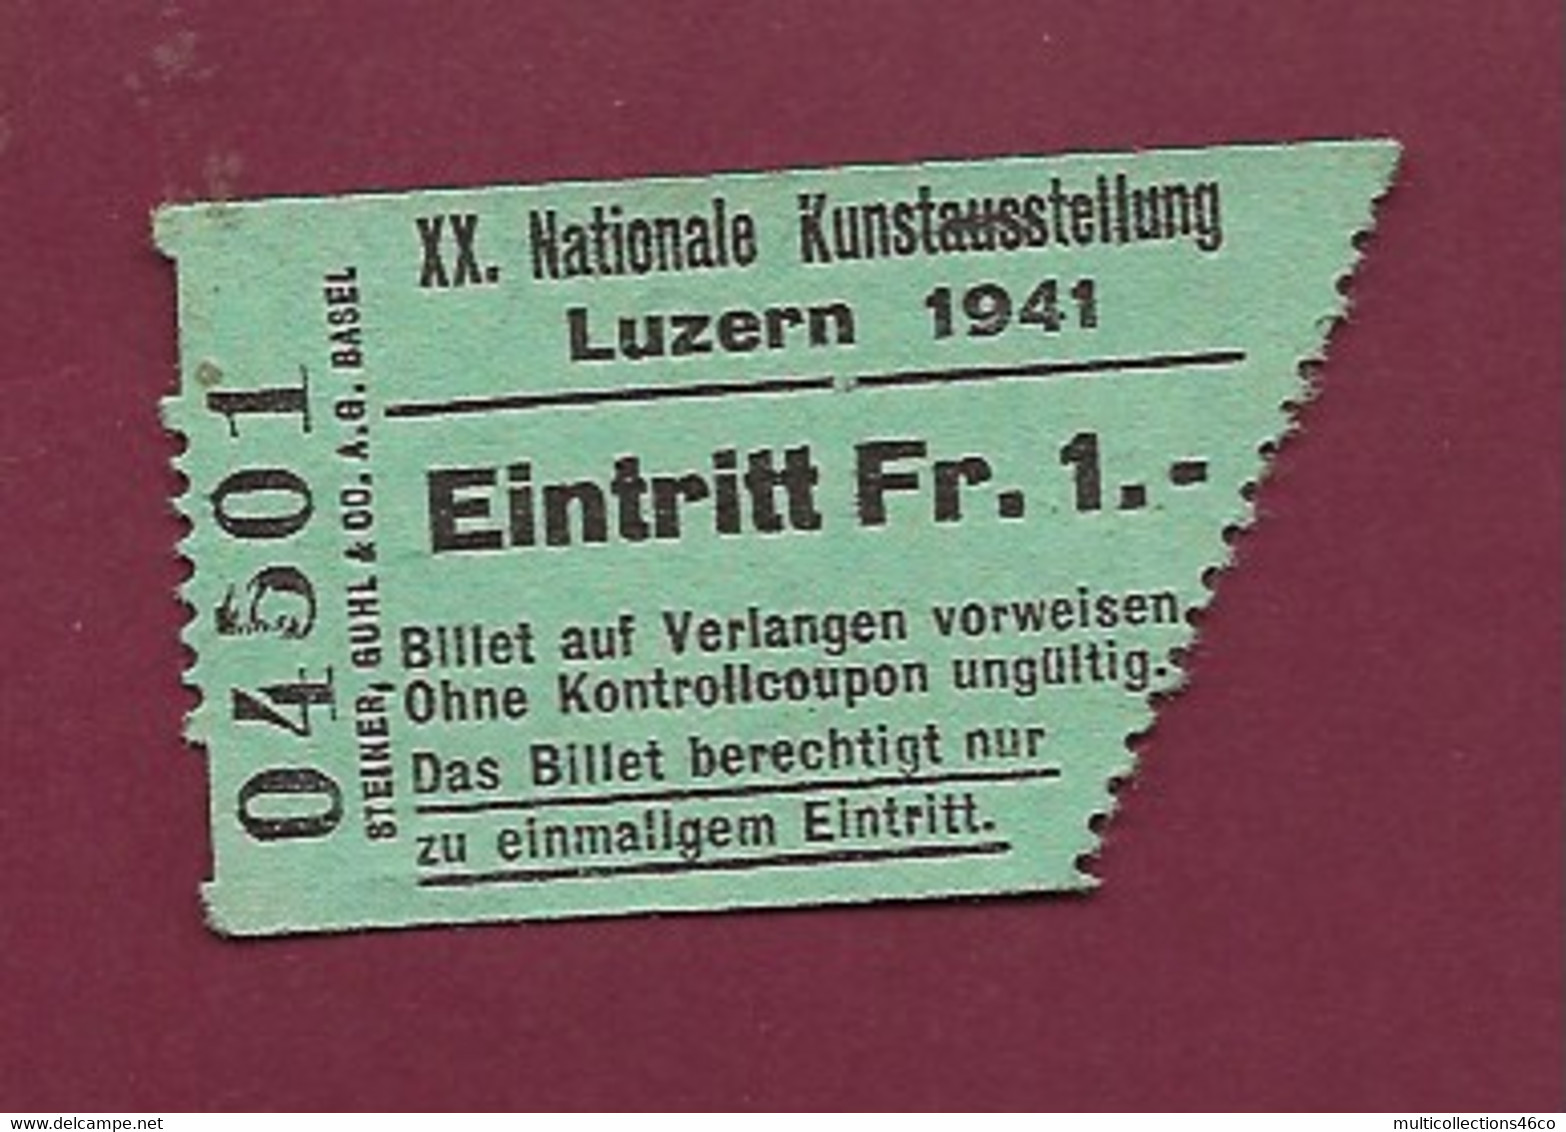 051120 - TICKET TRANSPORT SUISSE - LUZERN 1941 XX Nationale Kunstausstellung Eintritt FR 1 04501 - World